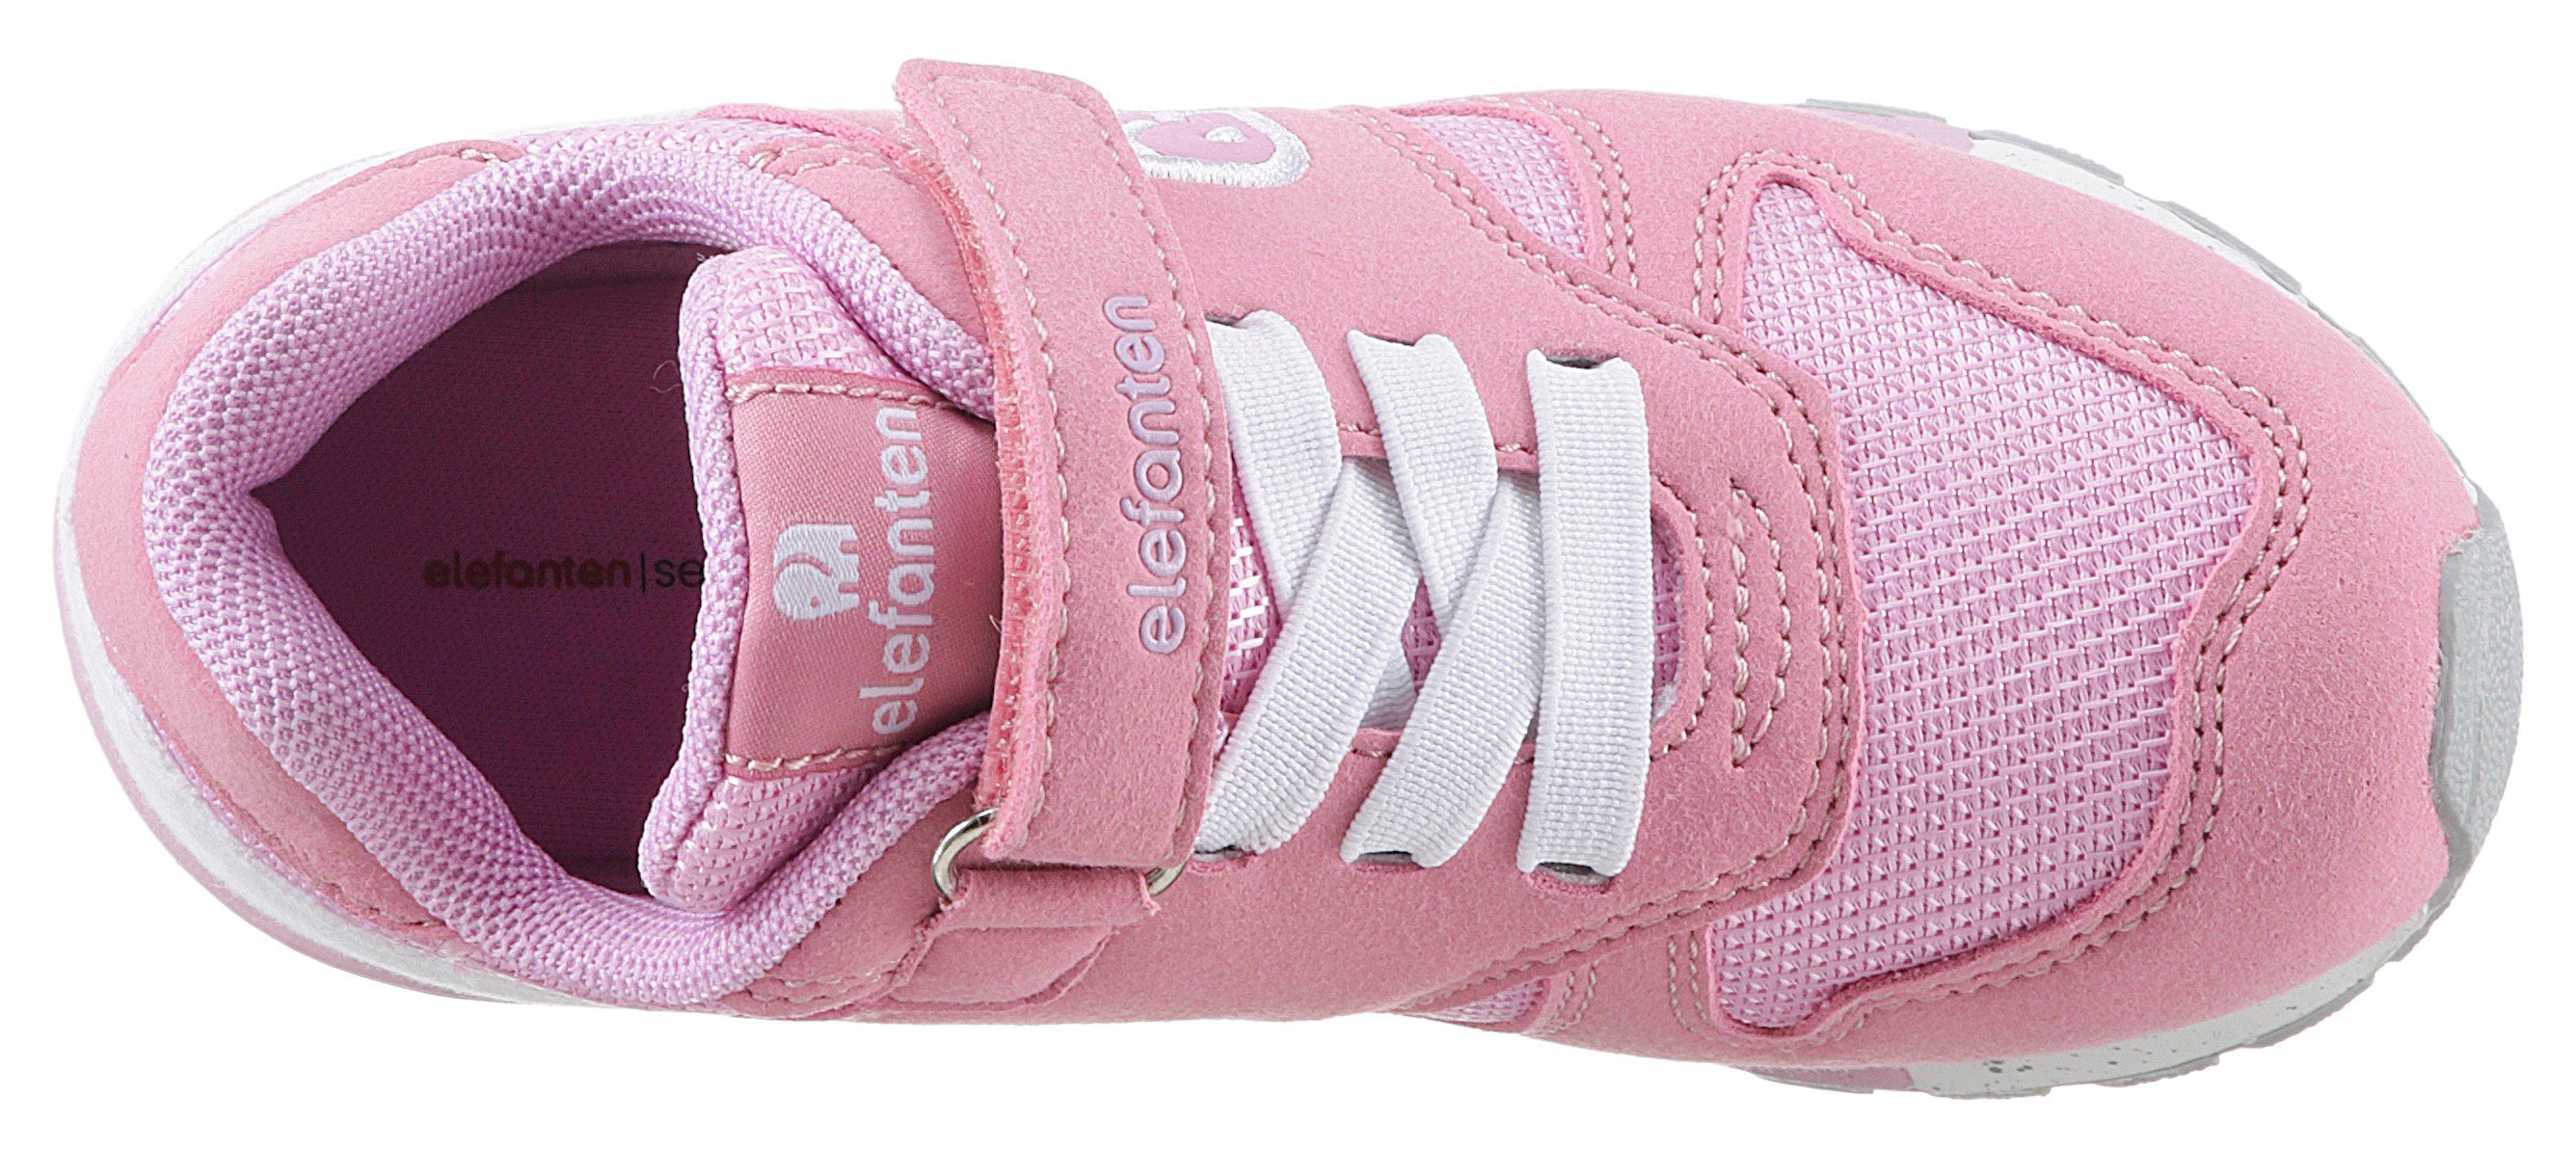 ELEFANTEN Hoppy WMS: Weit Sneaker pink-flieder Foam mit Memory weichem